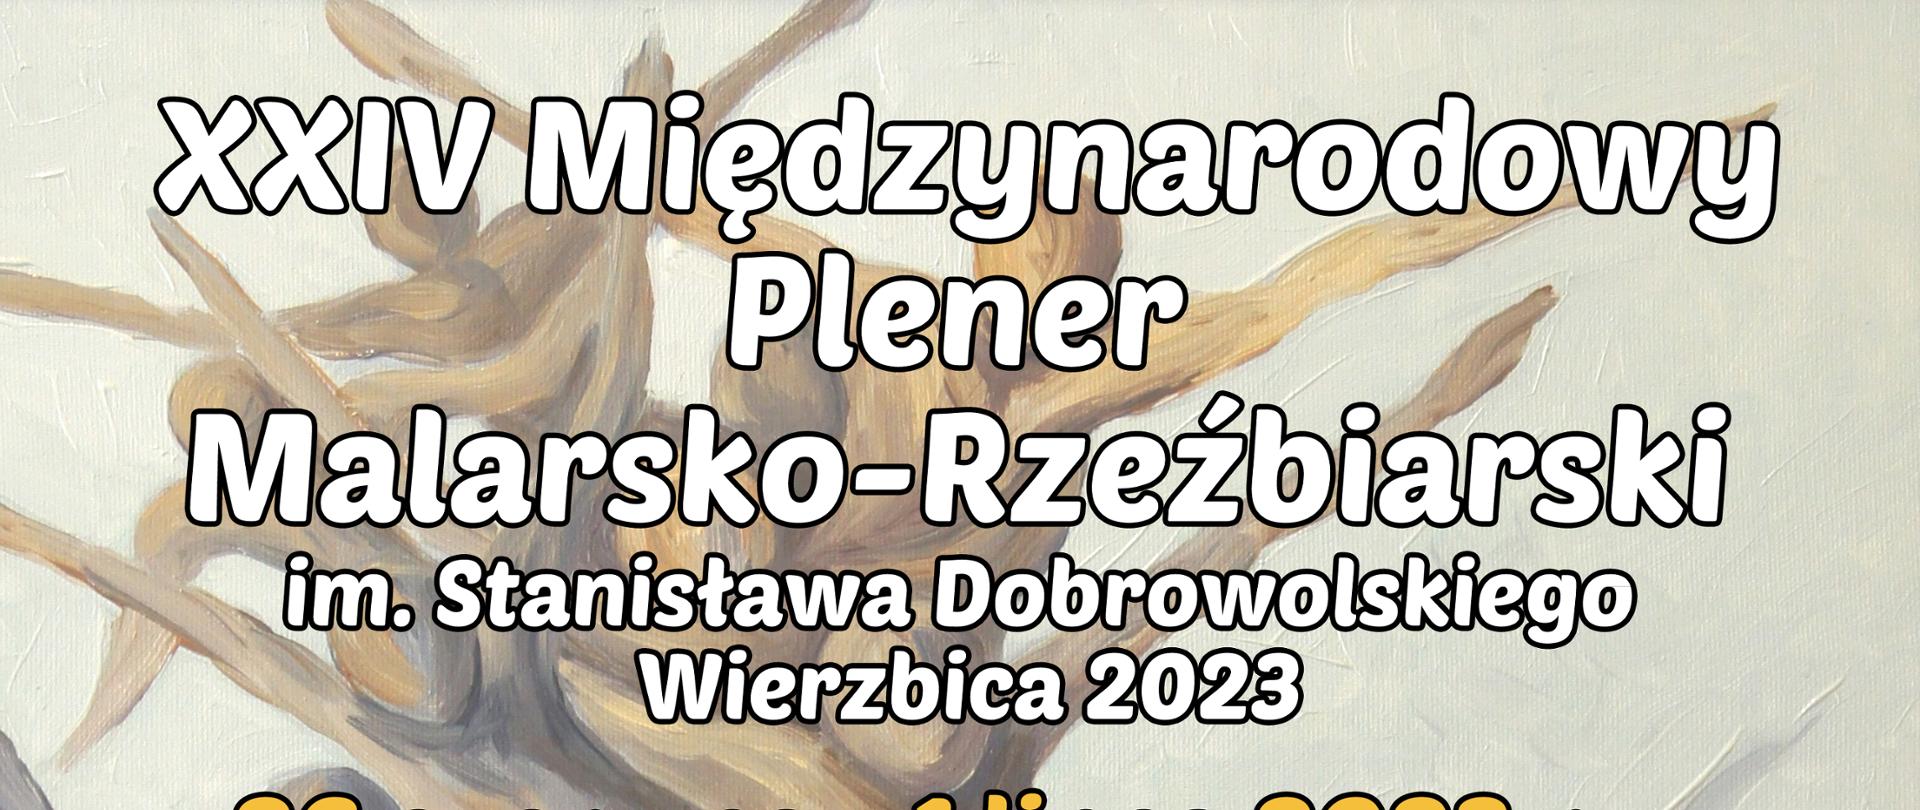 XXIV Międzynarodowy Plener Malarsko-Rzeźbiarski im. Stanisława Dobrowolskiego - Wierzbica 2023